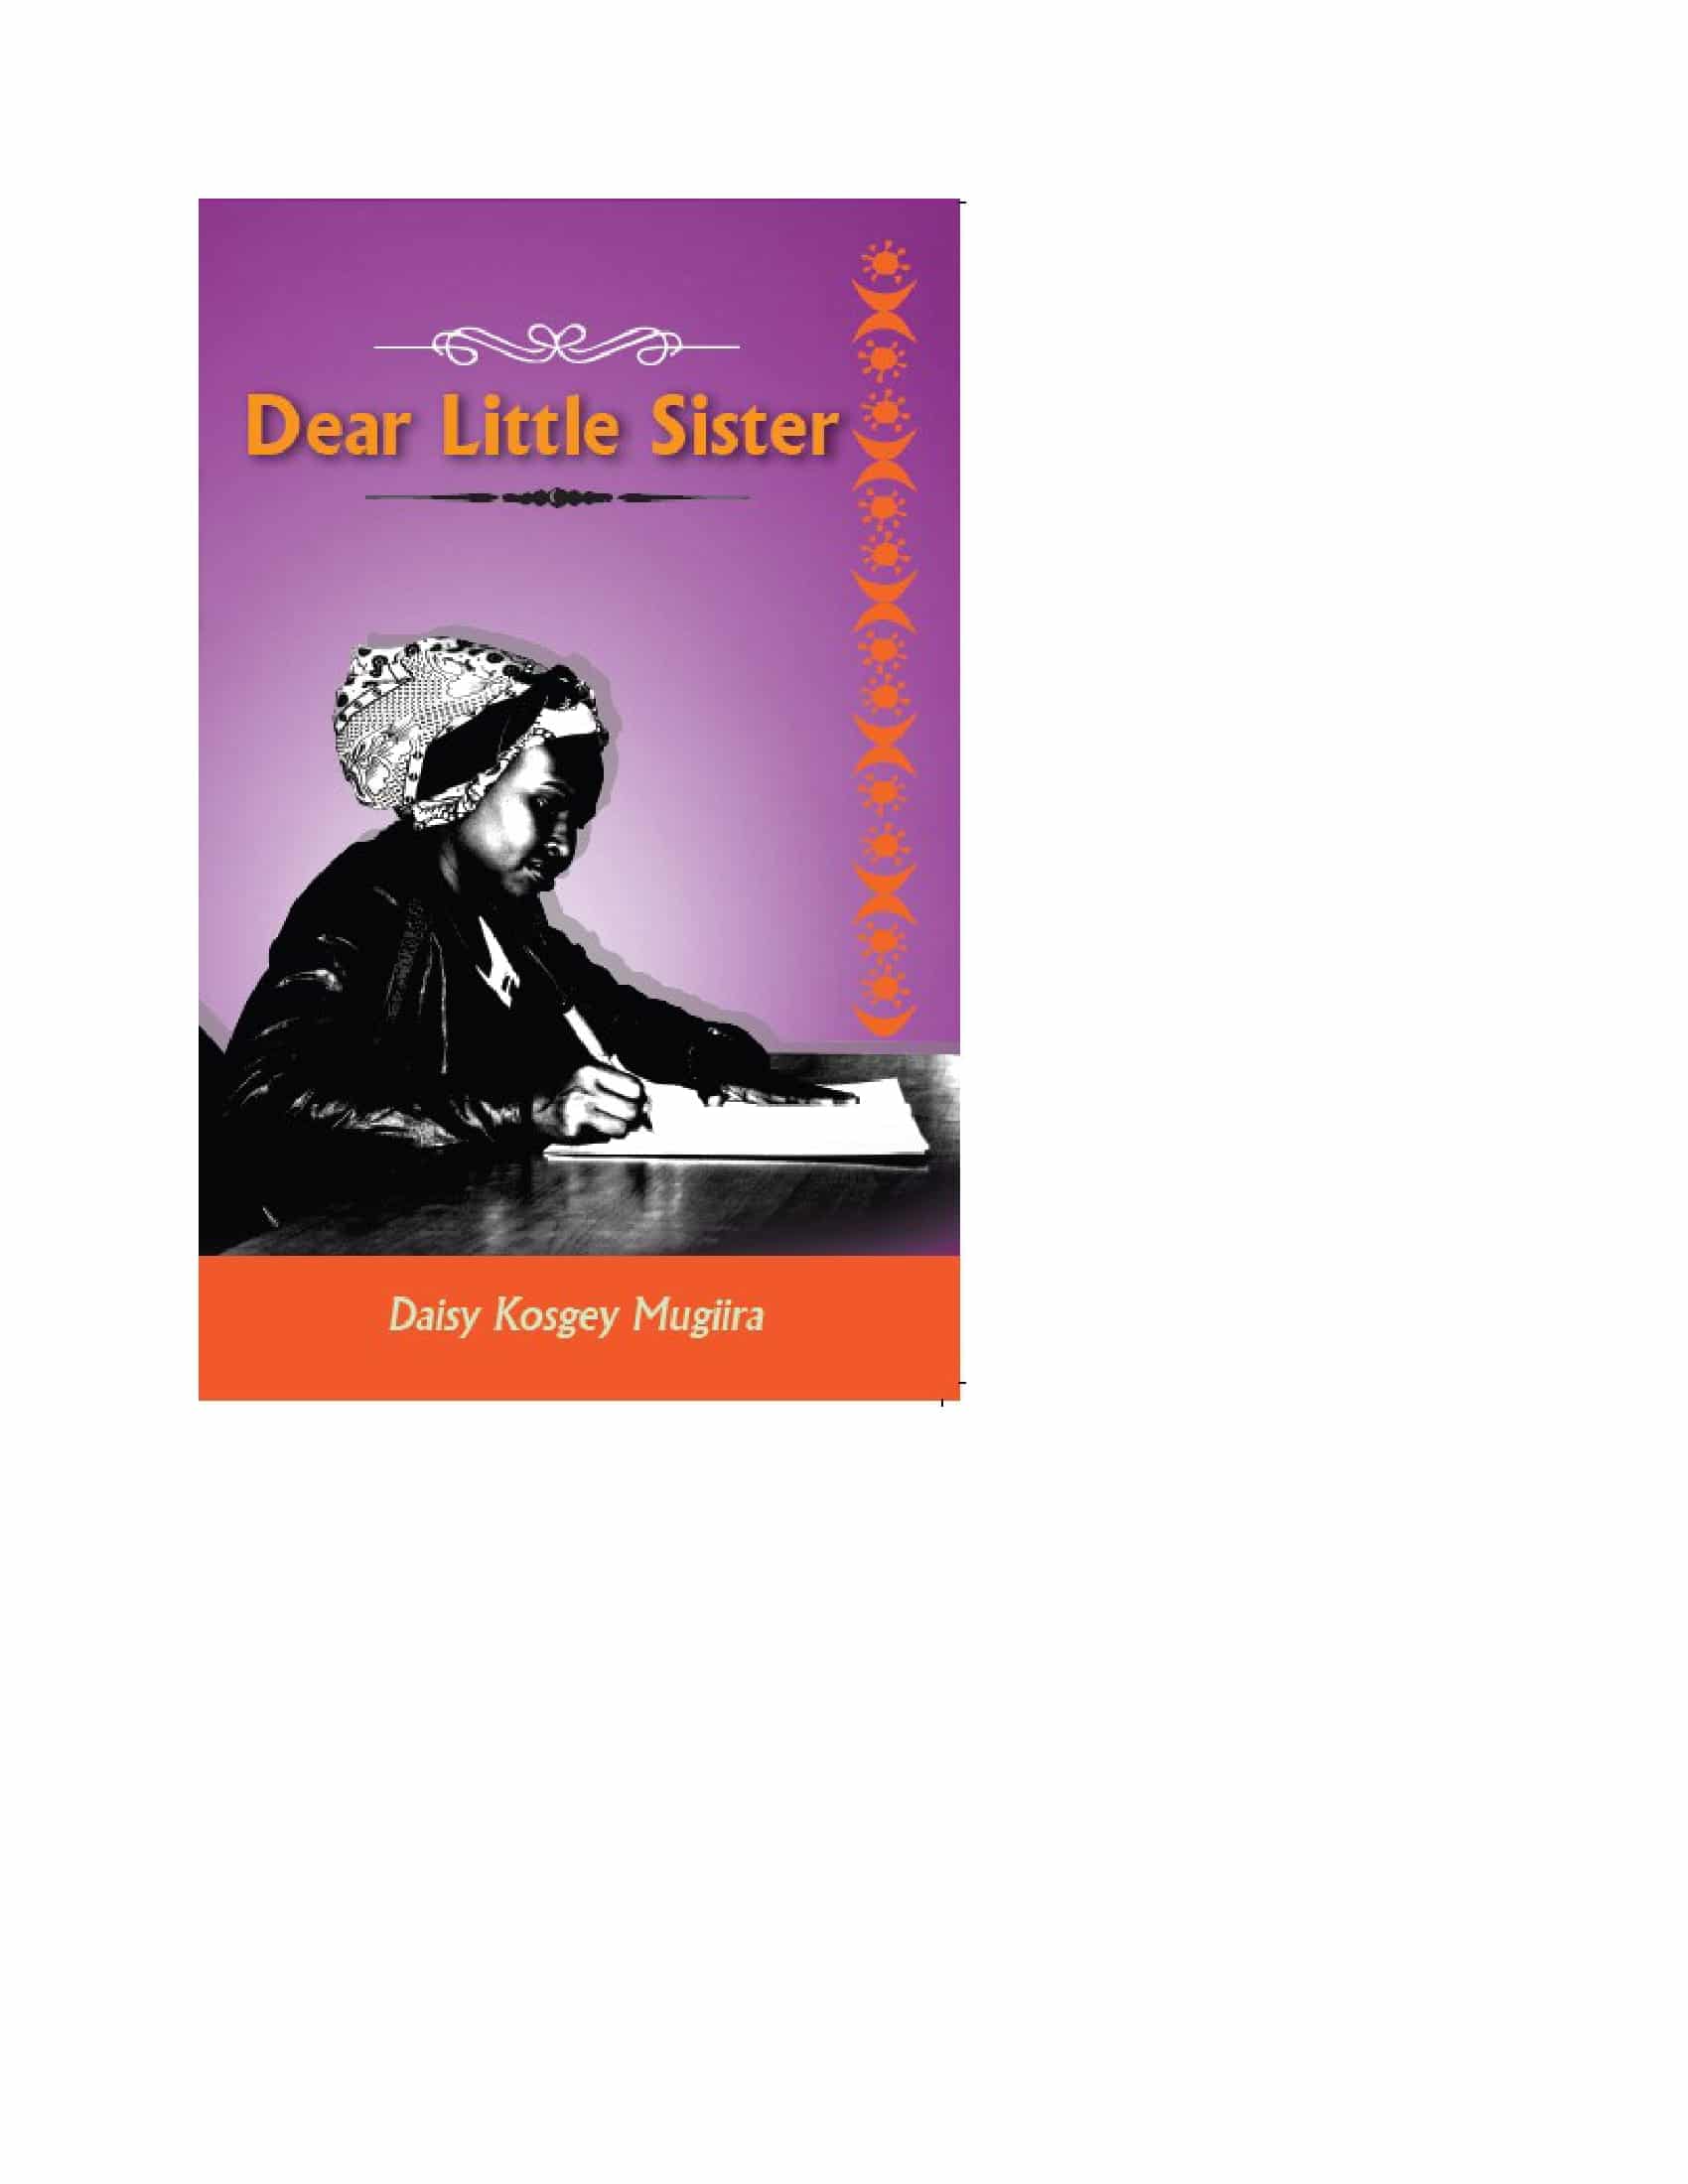 Dear Little Sister